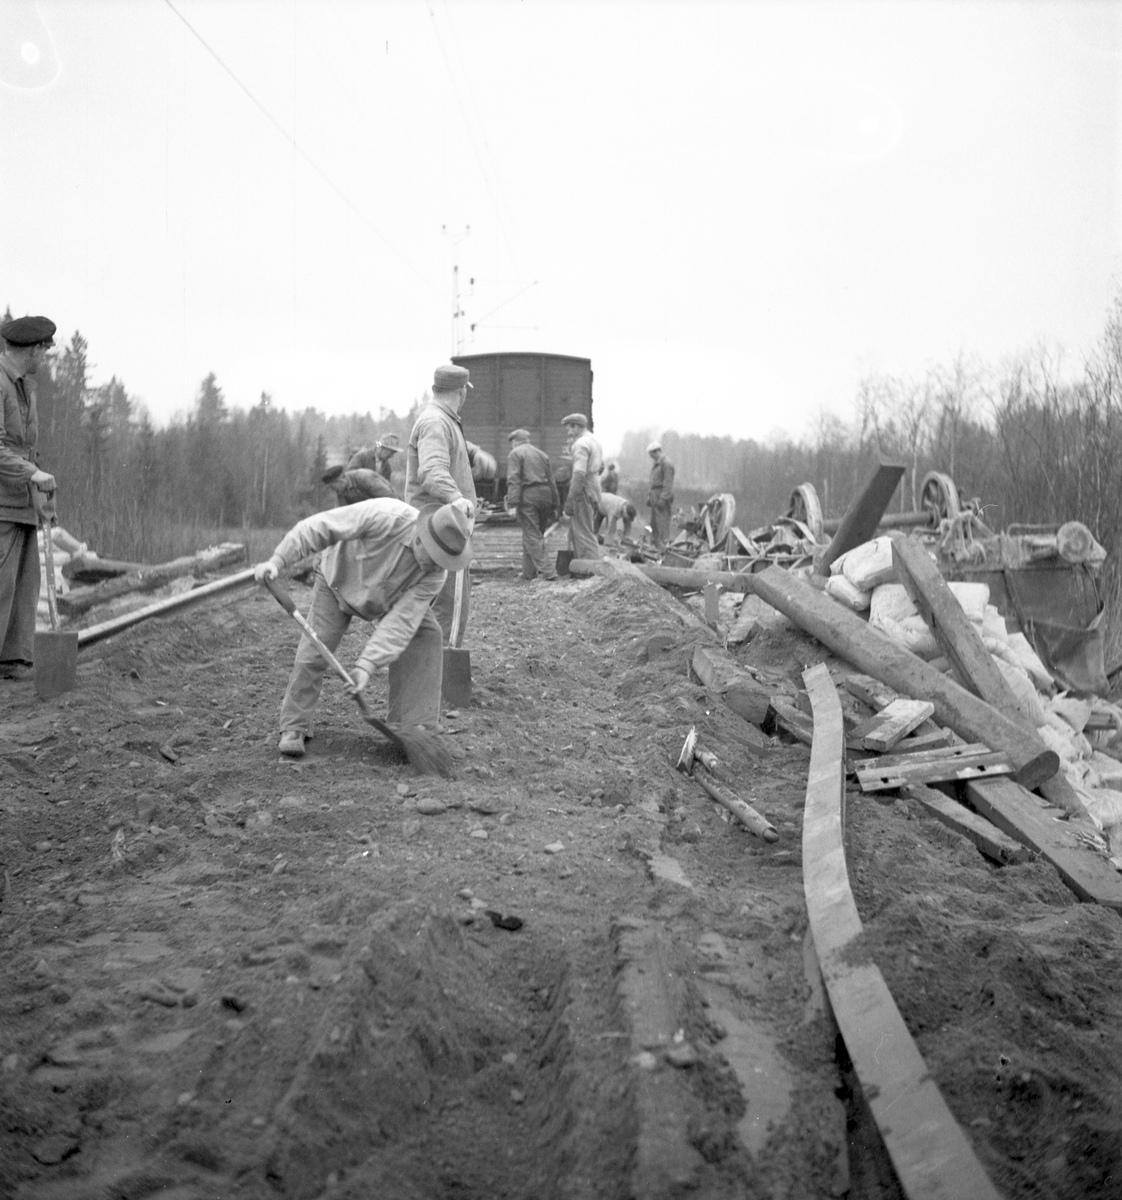 Tågolycka på linjen Gävle-Skutskär. Den 26 november 1949